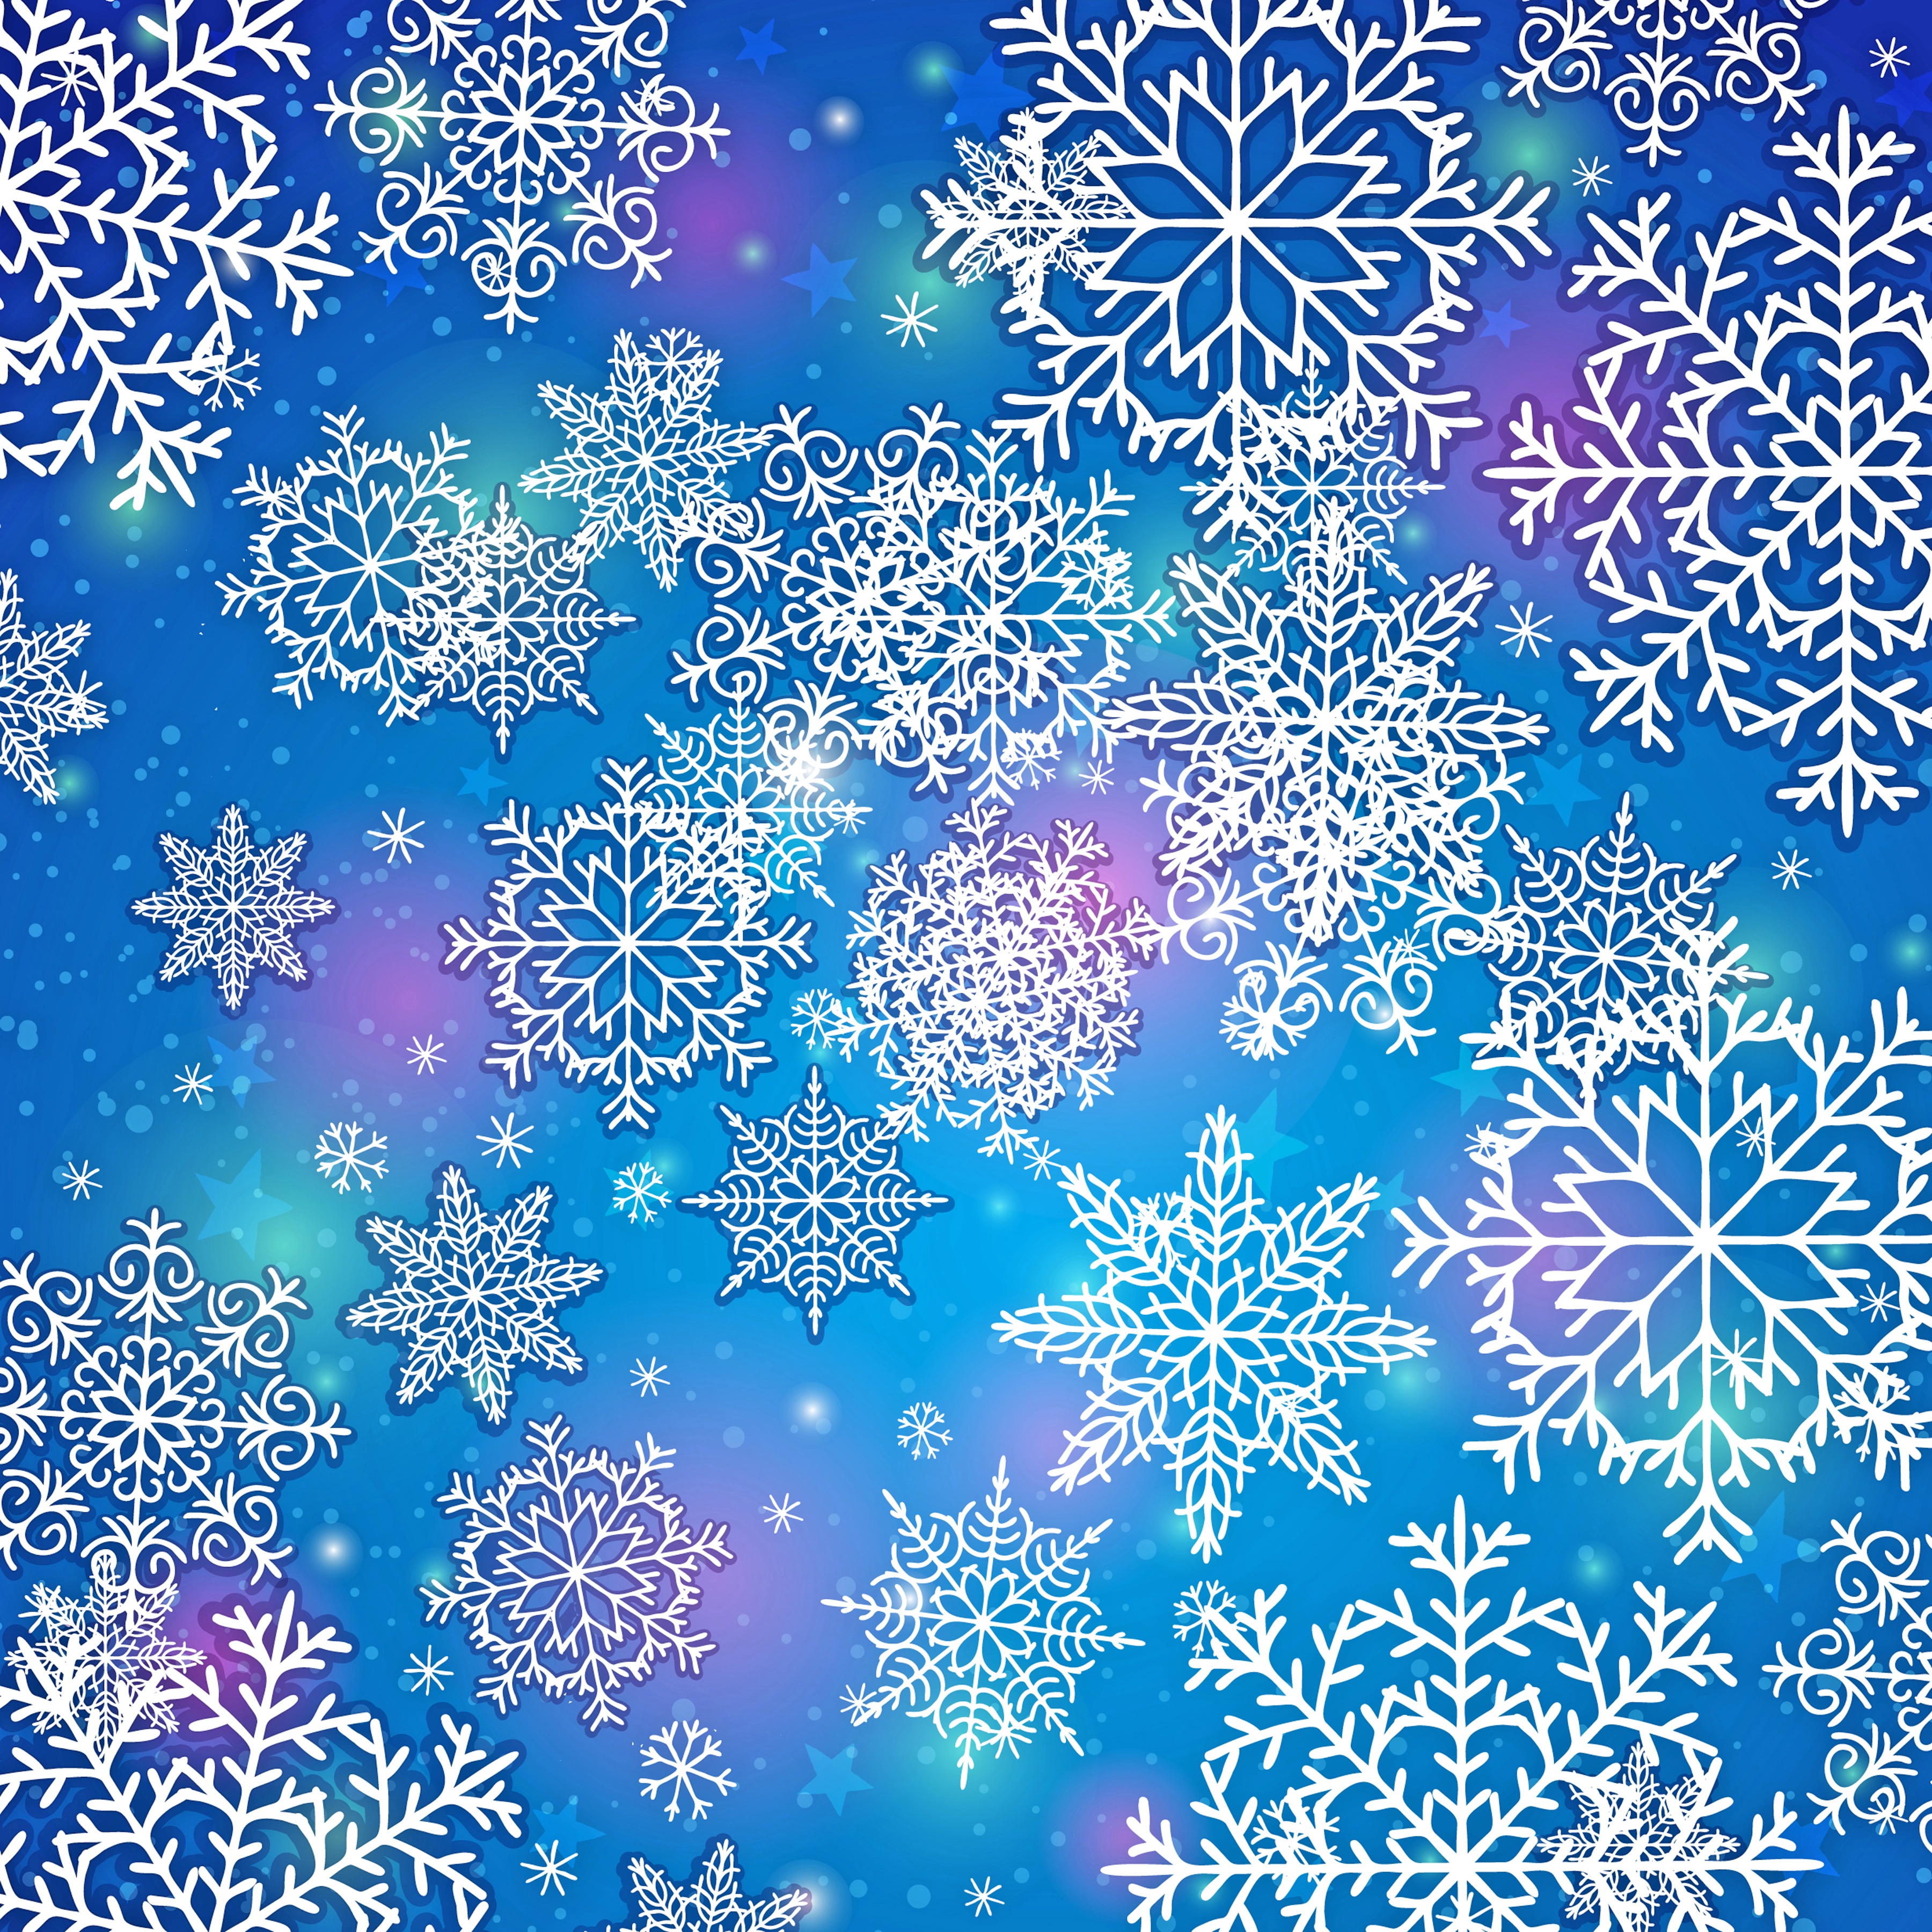 Яркие снежинки. Фон снежинки. Новогодний фон снежинки. Новогодняя Снежинка. Голубой фон со снежинками.